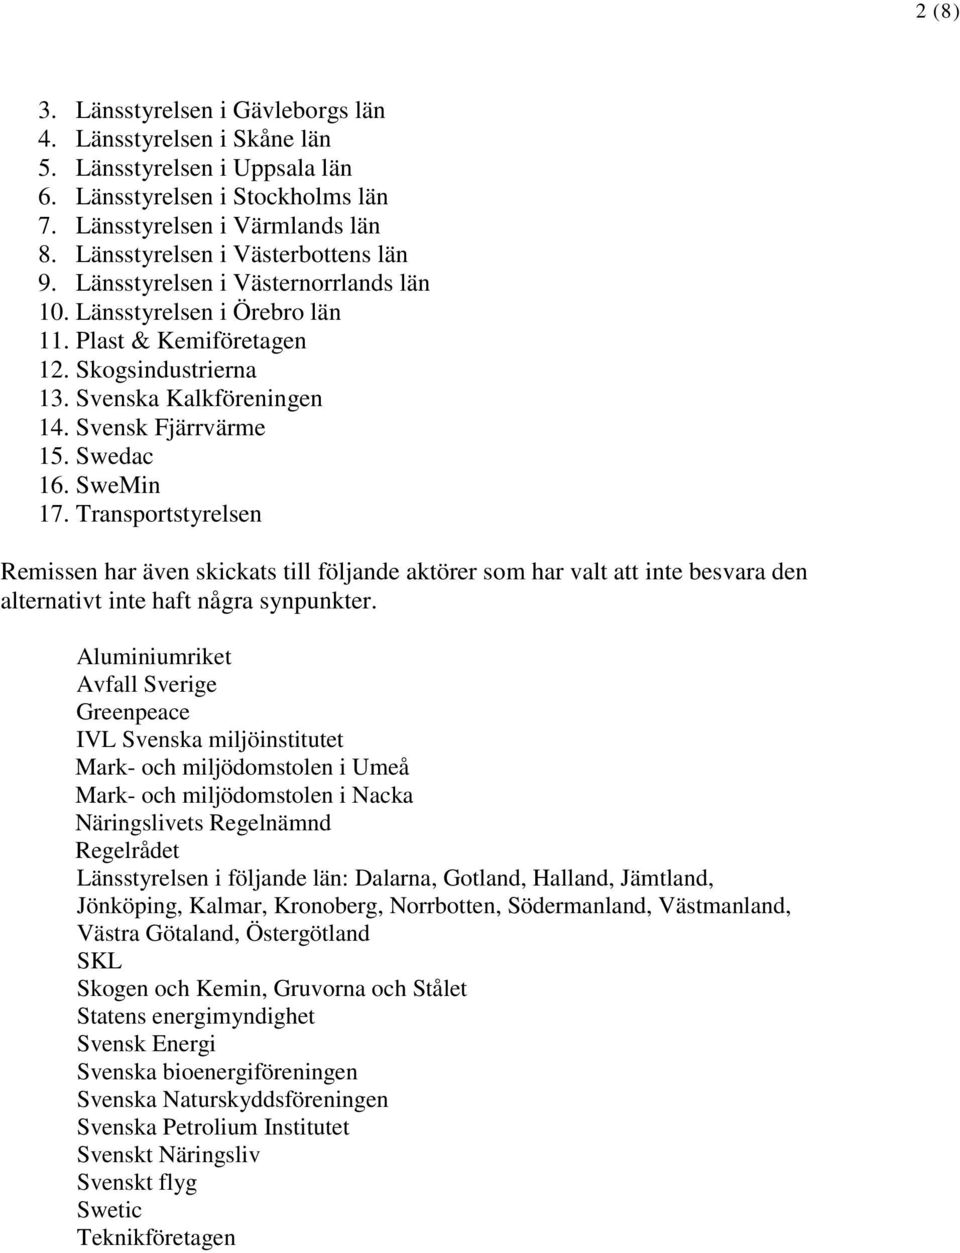 Svensk Fjärrvärme 15. Swedac 16. SweMin 17. Transportstyrelsen Remissen har även skickats till följande aktörer som har valt att inte besvara den alternativt inte haft några synpunkter.